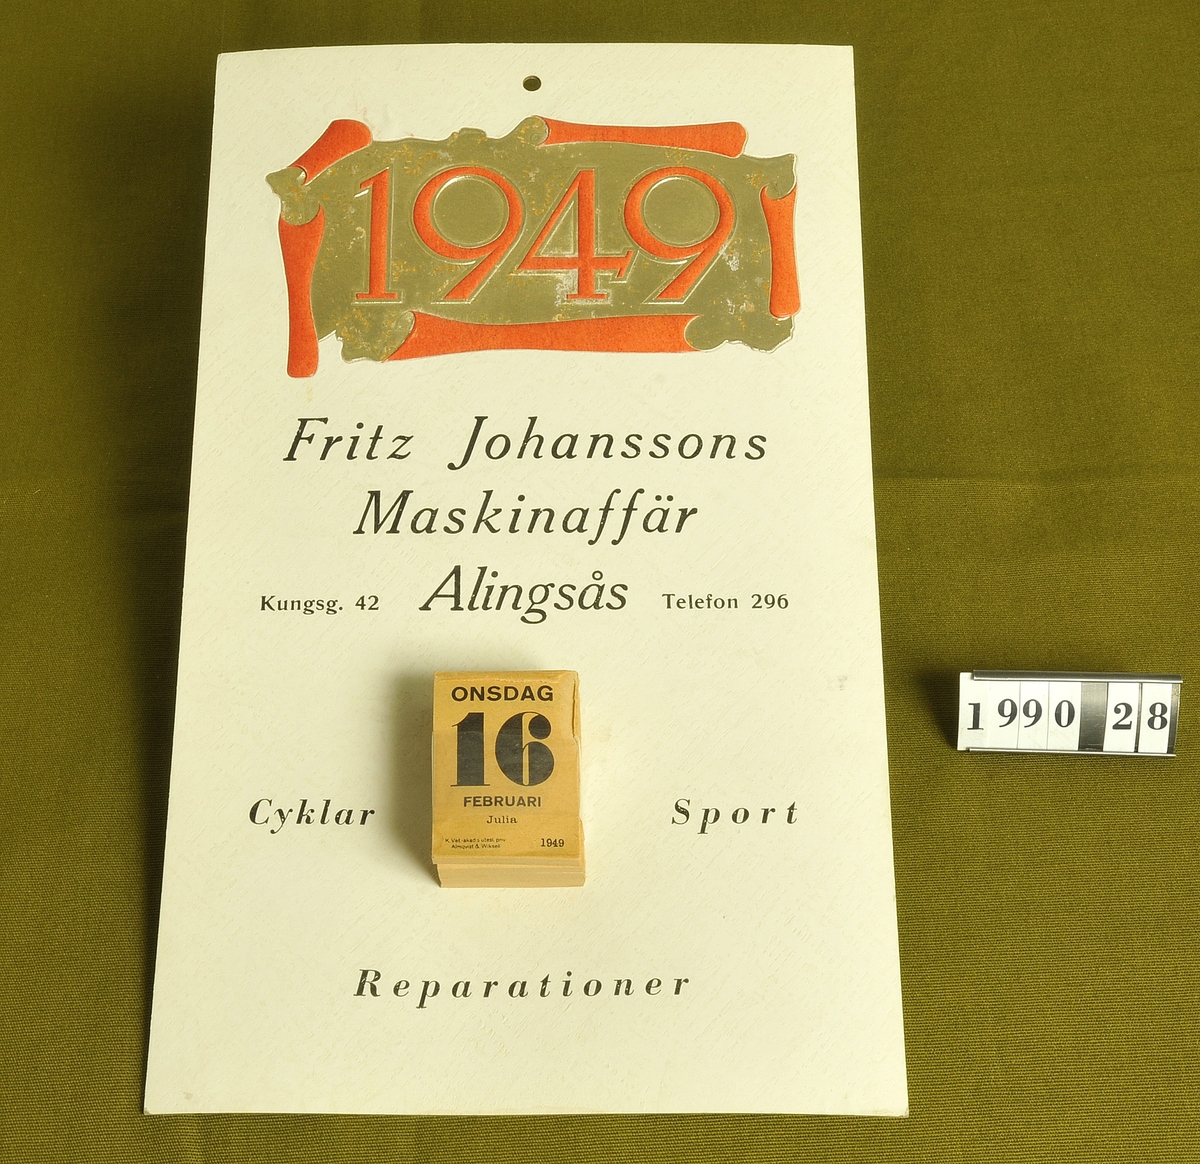 Vit papp med reklam för "Fritz Johanssons Maskin-
affär, Kungsgatn 42, Alingsås Tel: 296 
Cyklar Sport Reparationer".


Årtalet 1949 i rött och guld på dess övre del.

Almanacksblad:: 16 februari 1949.
